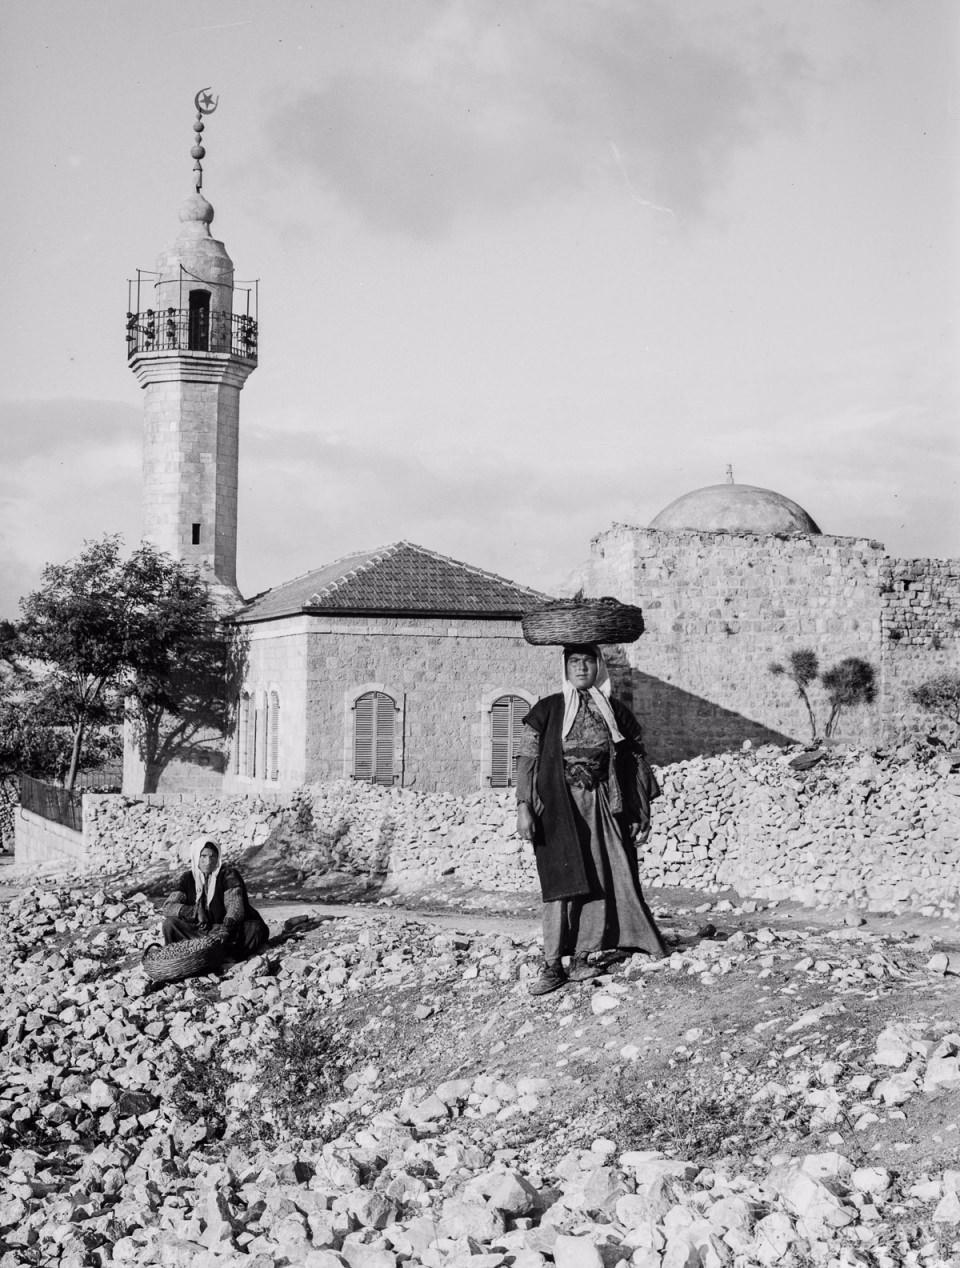 <p>Alex Arbuckle, Kudüs Türk hakimiyetindeki son günlerini gösteren Amerikan Kongre Kütüphanesi'nde bulunan 1900-1918 yılları arasında çekilmiş fotoğrafları derledi. 1517'den itibaren Osmanlı'nın kontrolüne geçen Kudüs'ün tarihi merkezi Müslüman, Hristiyan Yahudi ve Ermeni semtlerine ayrılmıştı.</p>

<p> </p>
